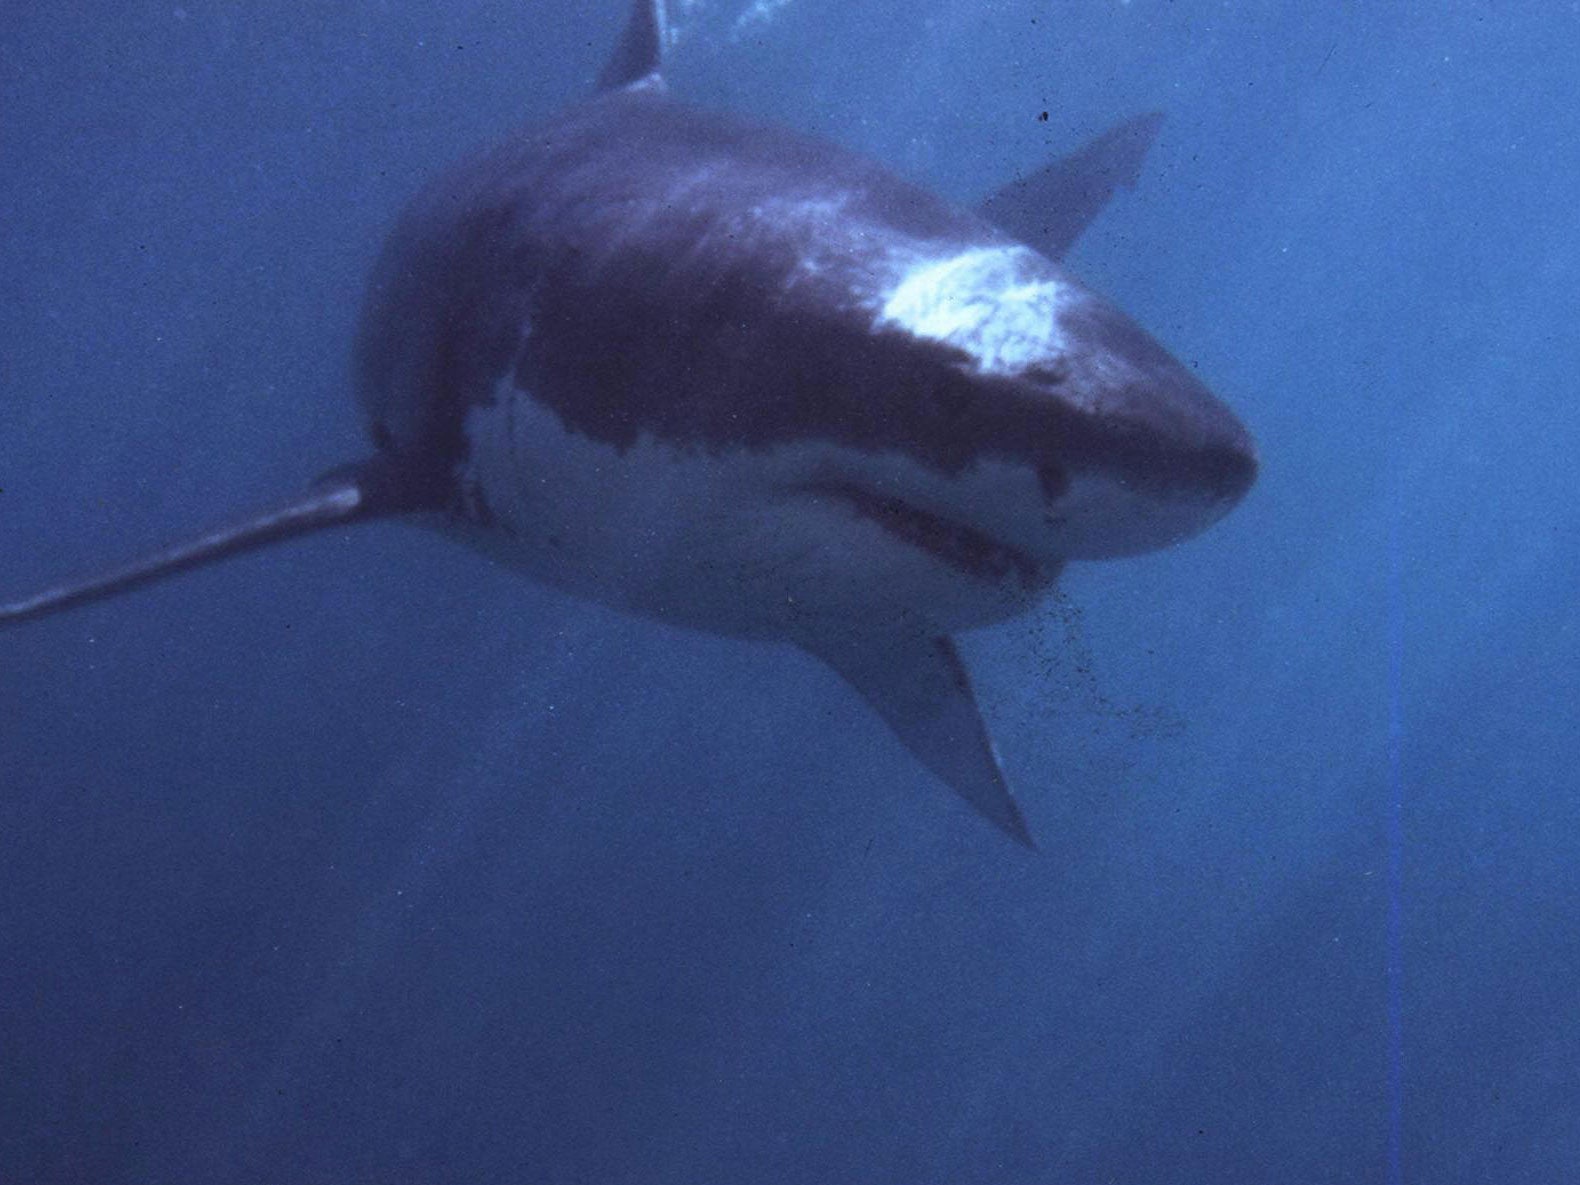 Outside/Inbox: How do shark noses work underwater?